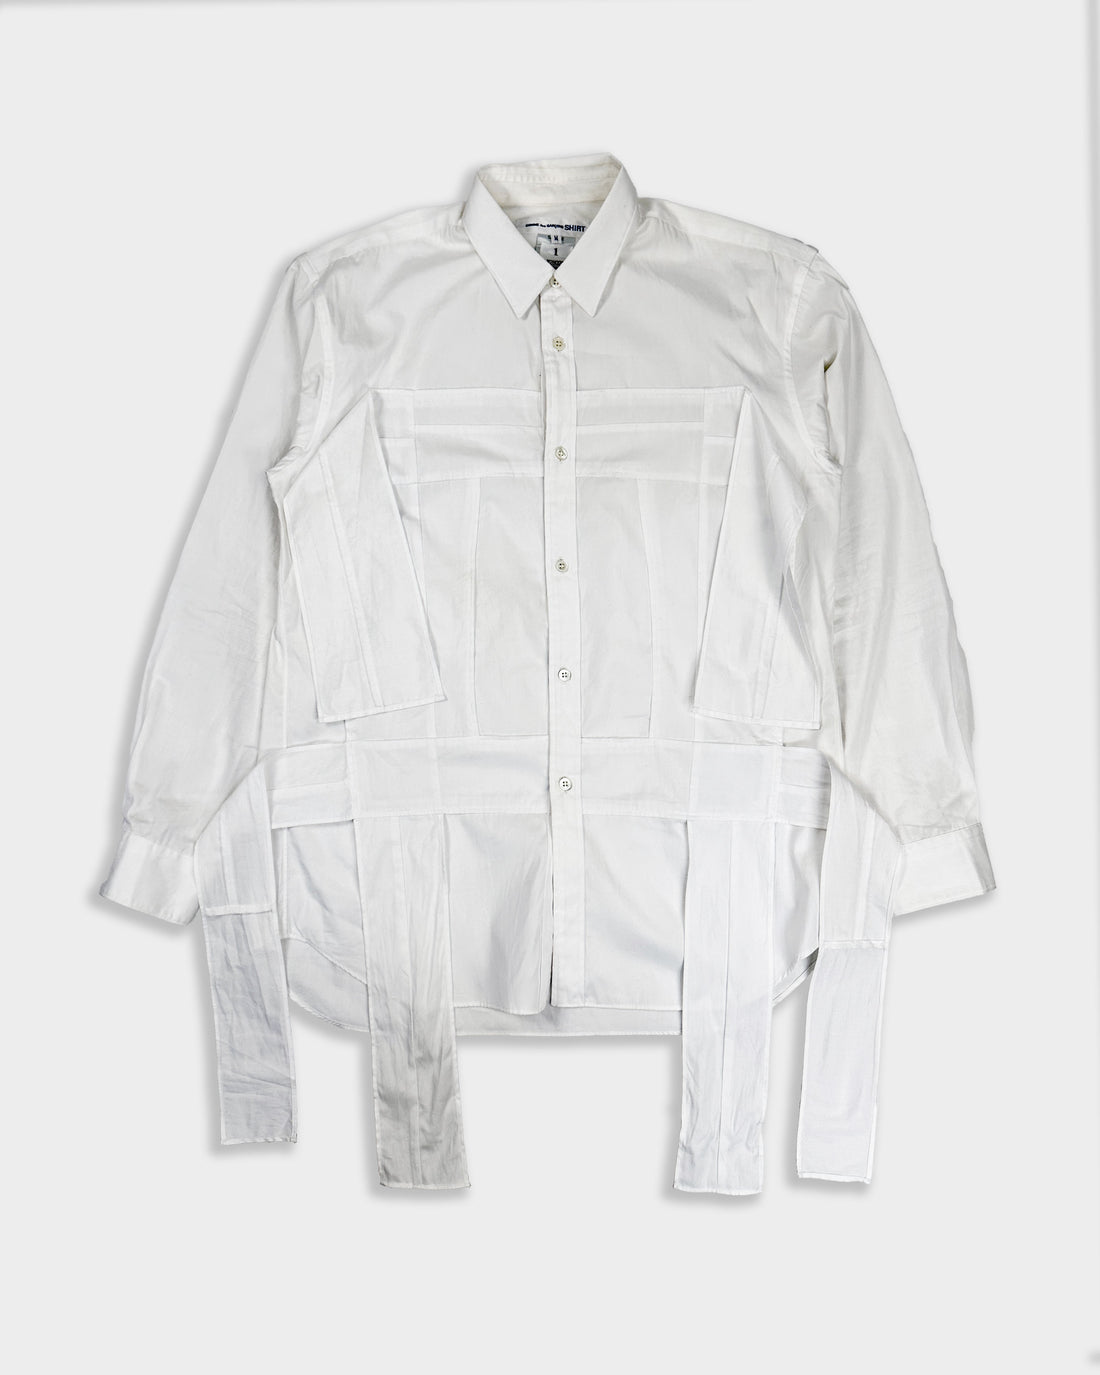 Comme des Garçons Deconstructed White SAMPLE Shirt 2000's